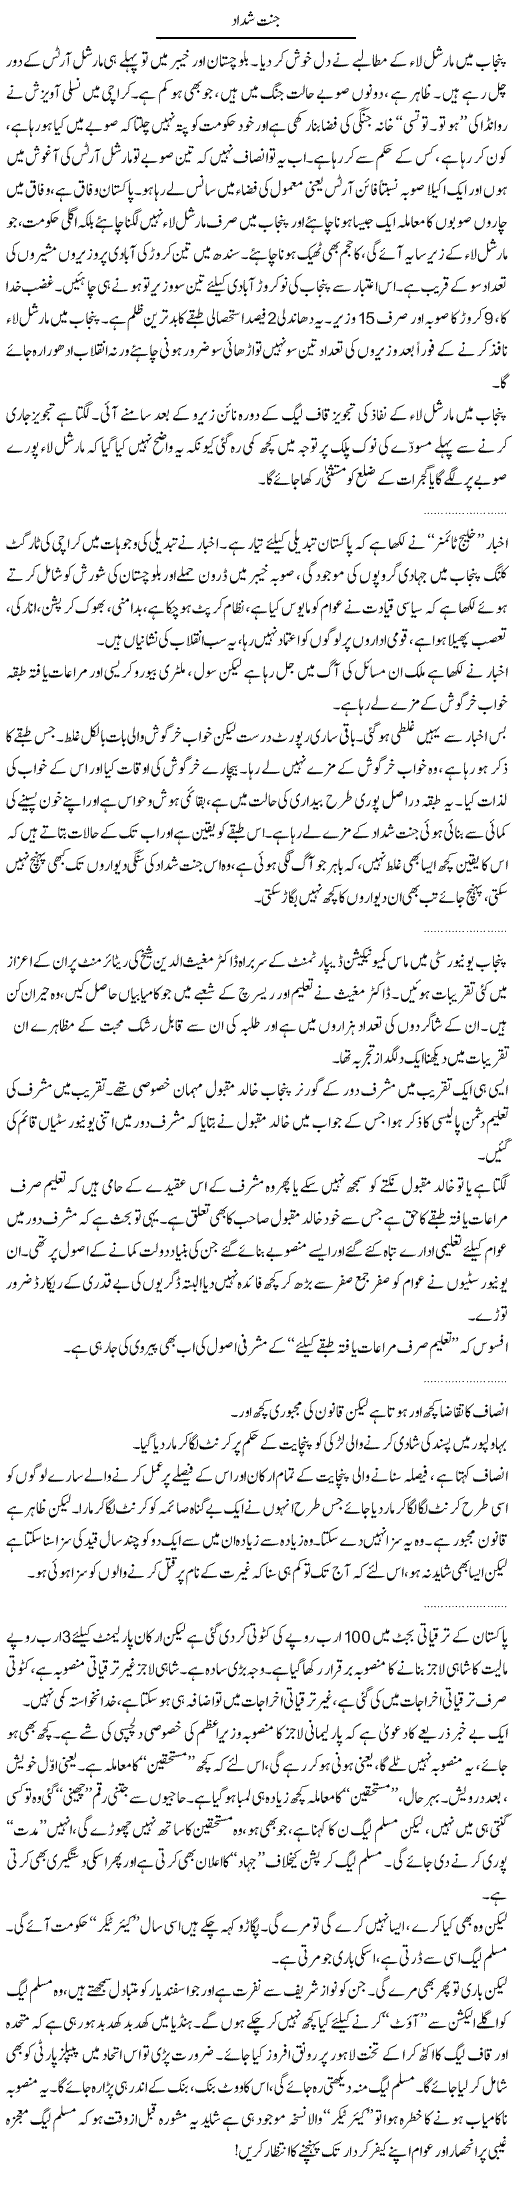 Today's News Express Column Abdullah Tariq 26 January 2011